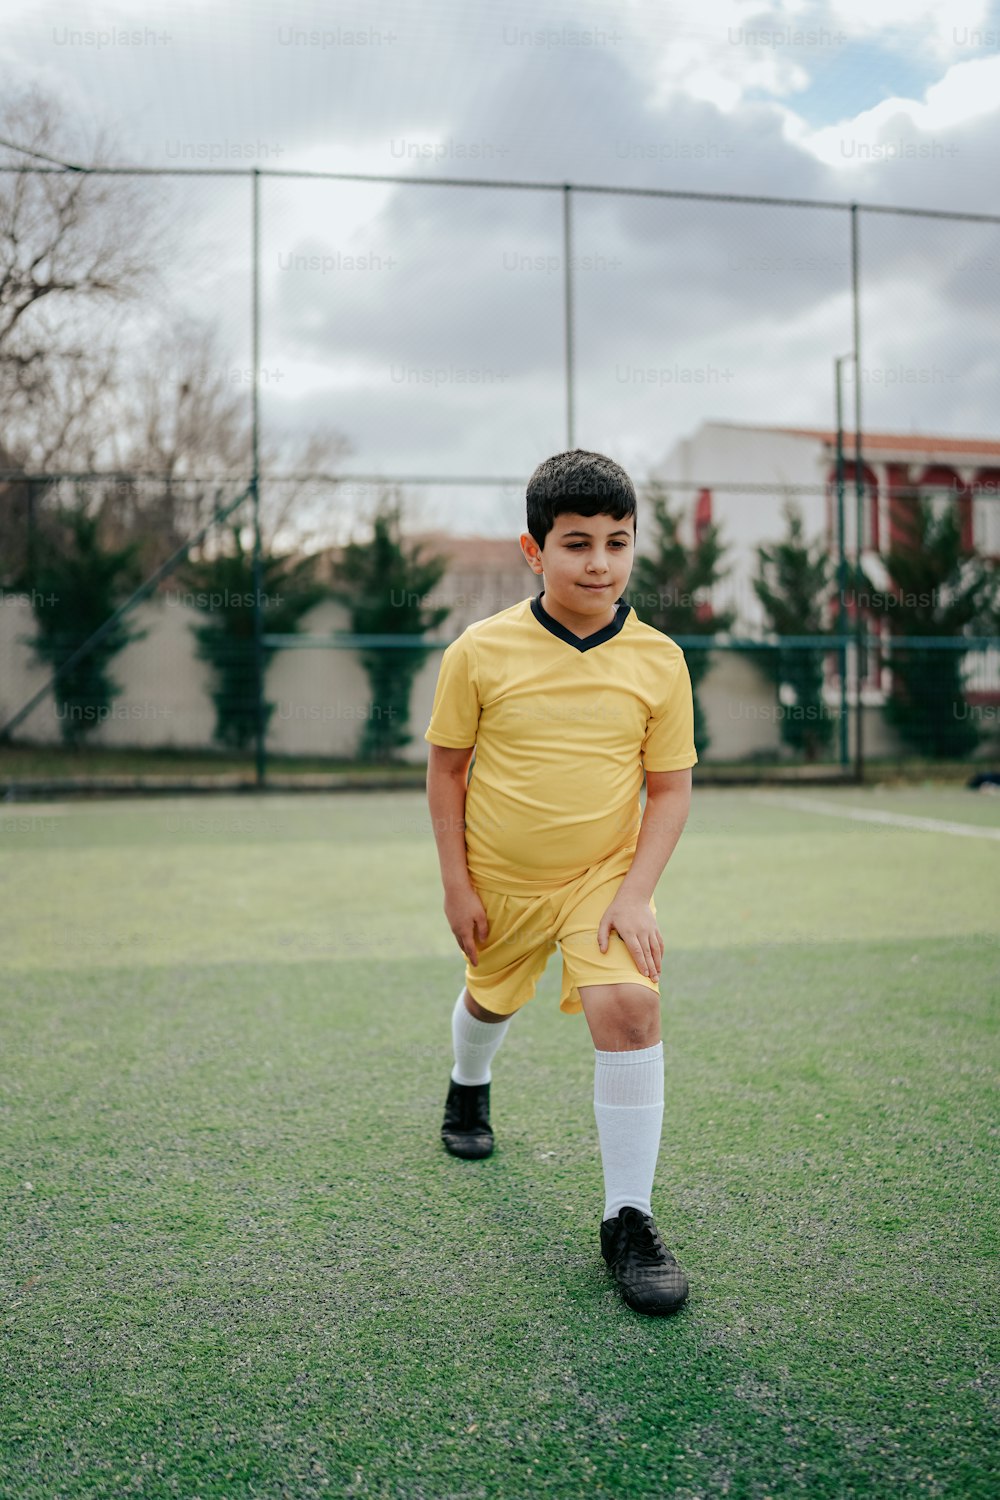 Un niño con uniforme de fútbol parado en un campo